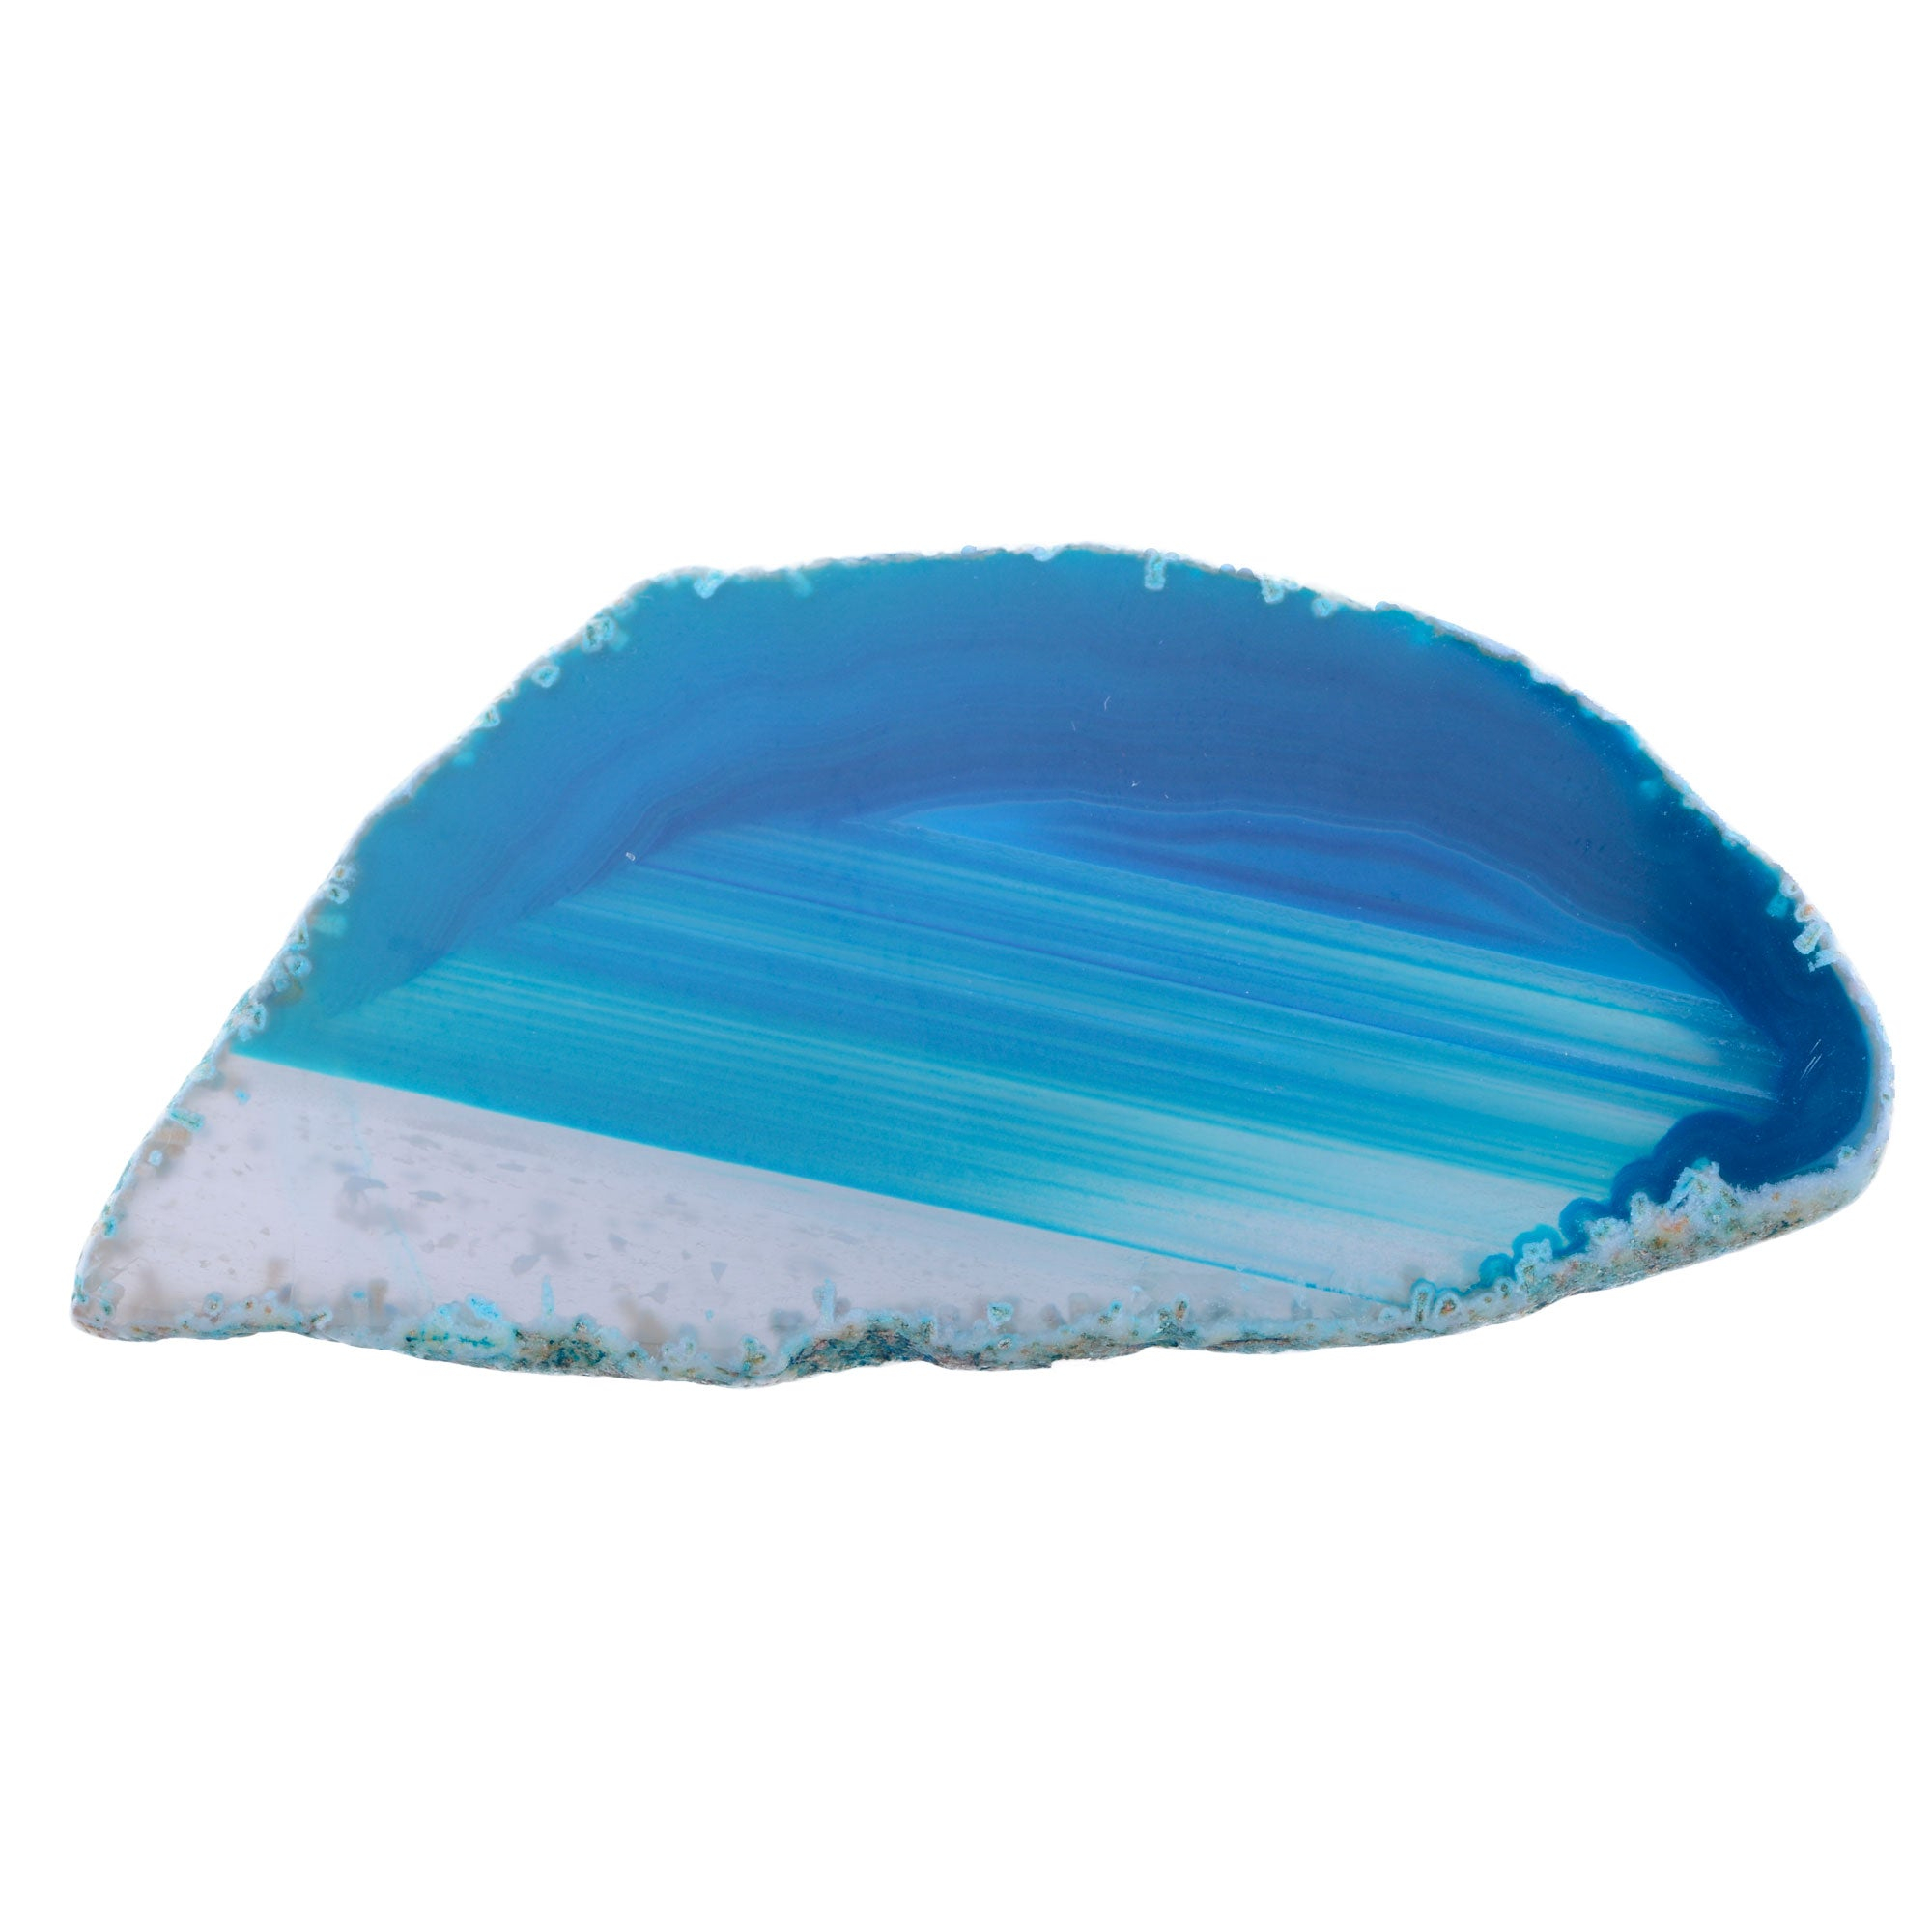 Achatscheibe - Blau - 9 cm